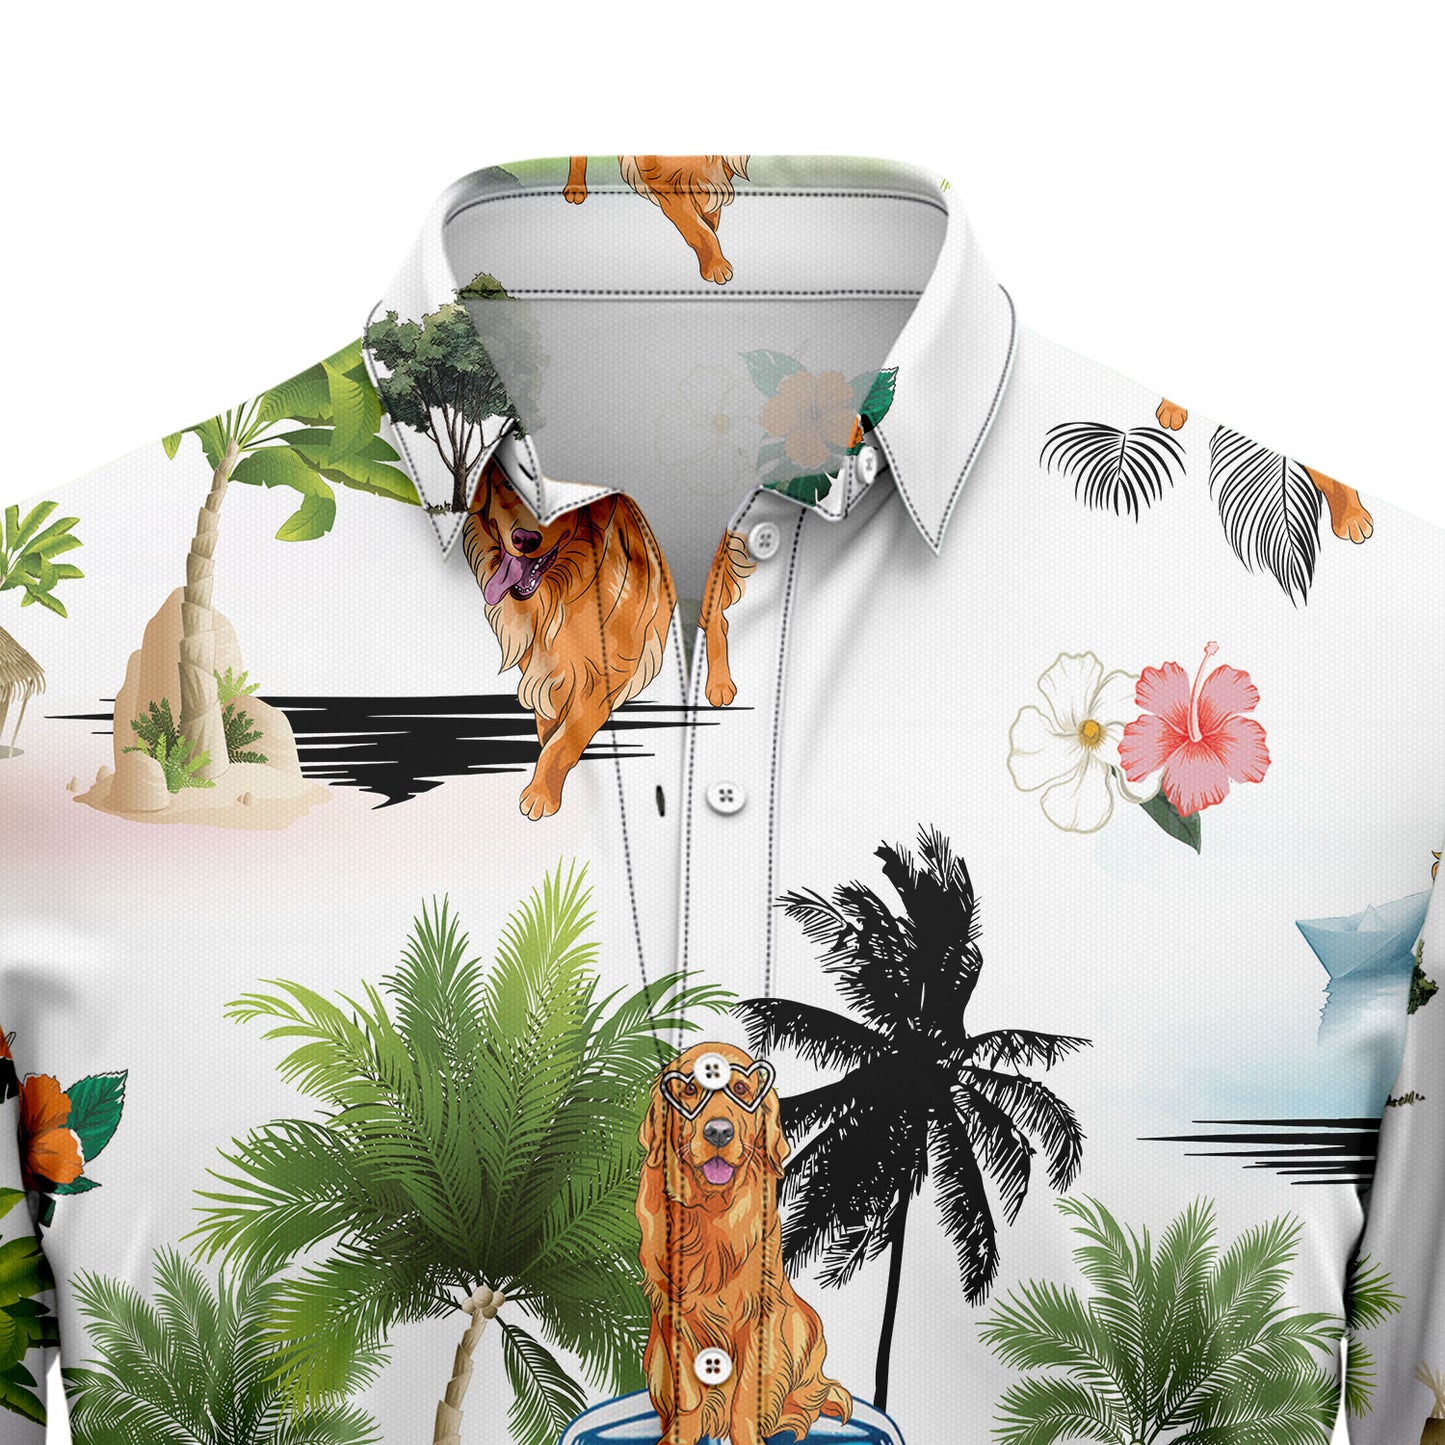 Golden Retriever Vacation G5708 Hawaiian Shirt